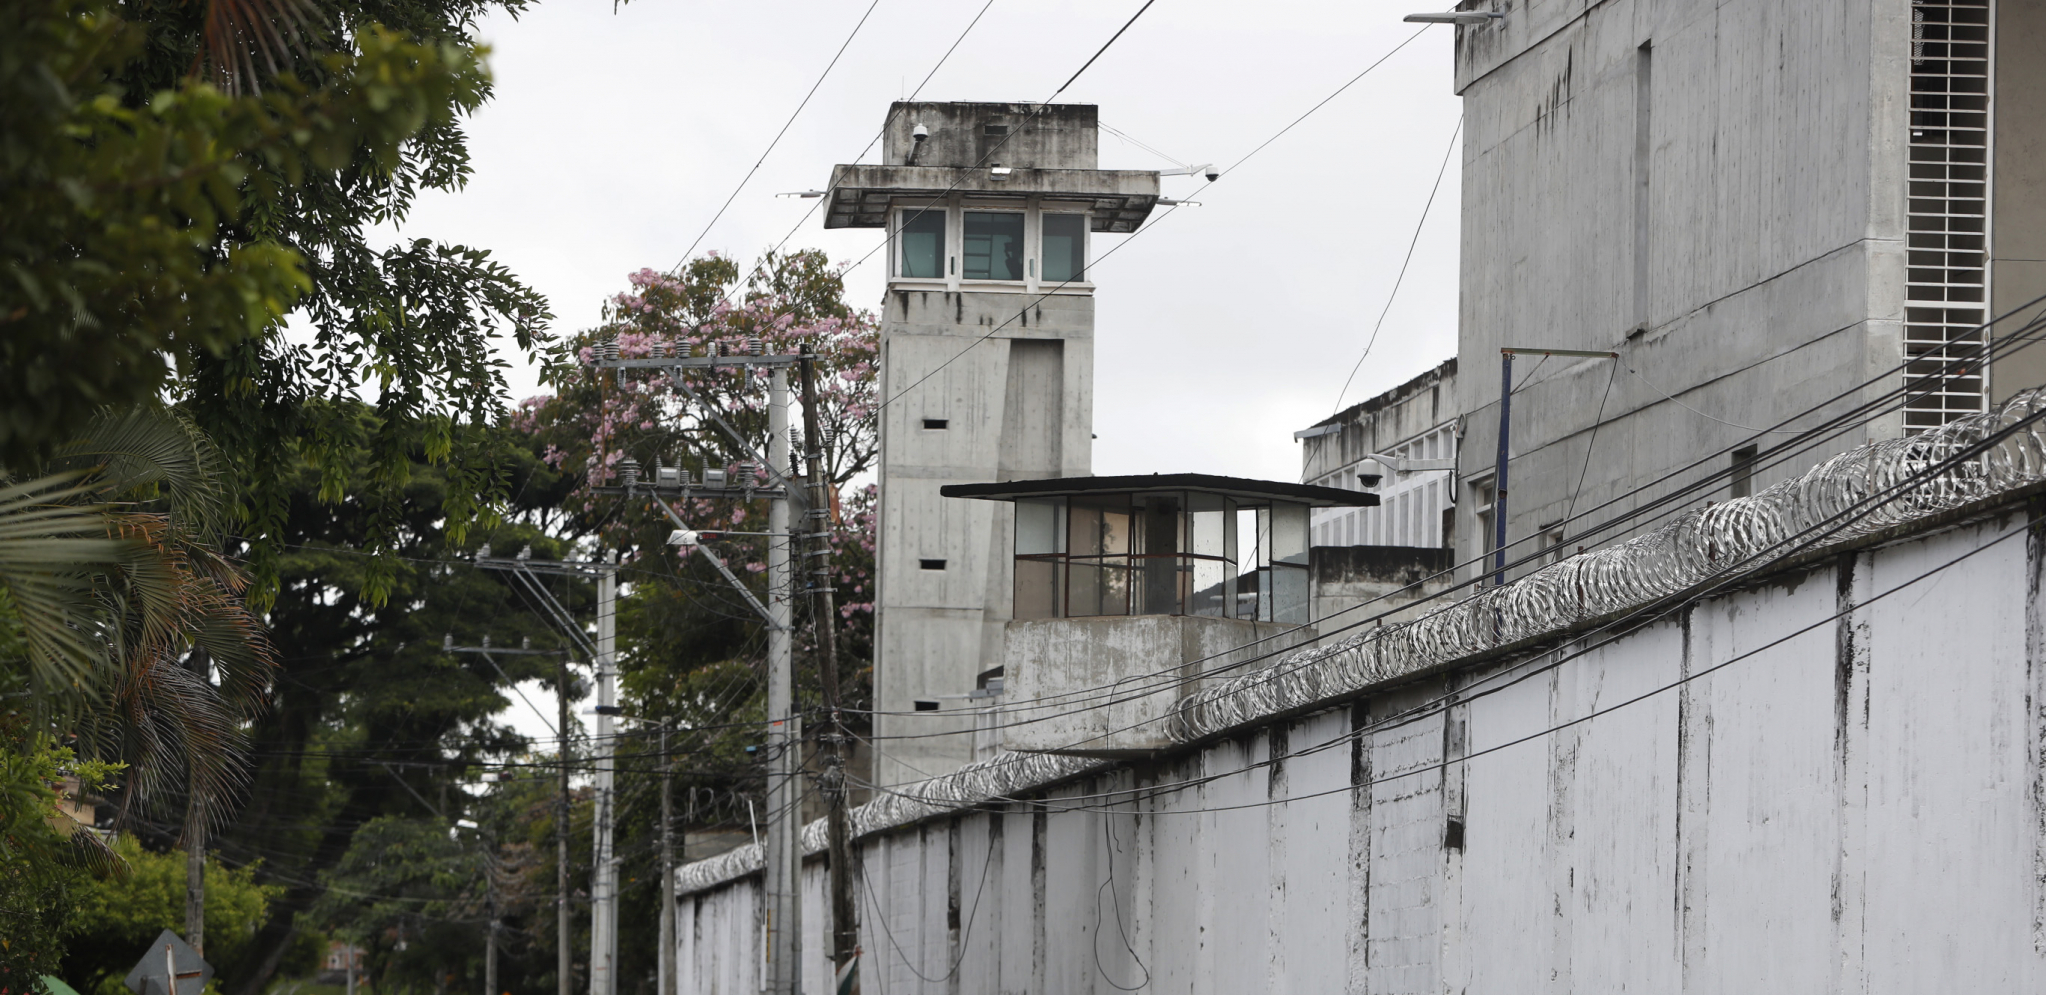 BUKTINJA ODNELA PREKO 50 ŽIVOTA U kolumbijskom zatvoru izbio požar tokom pobune i pokušaja bekstva